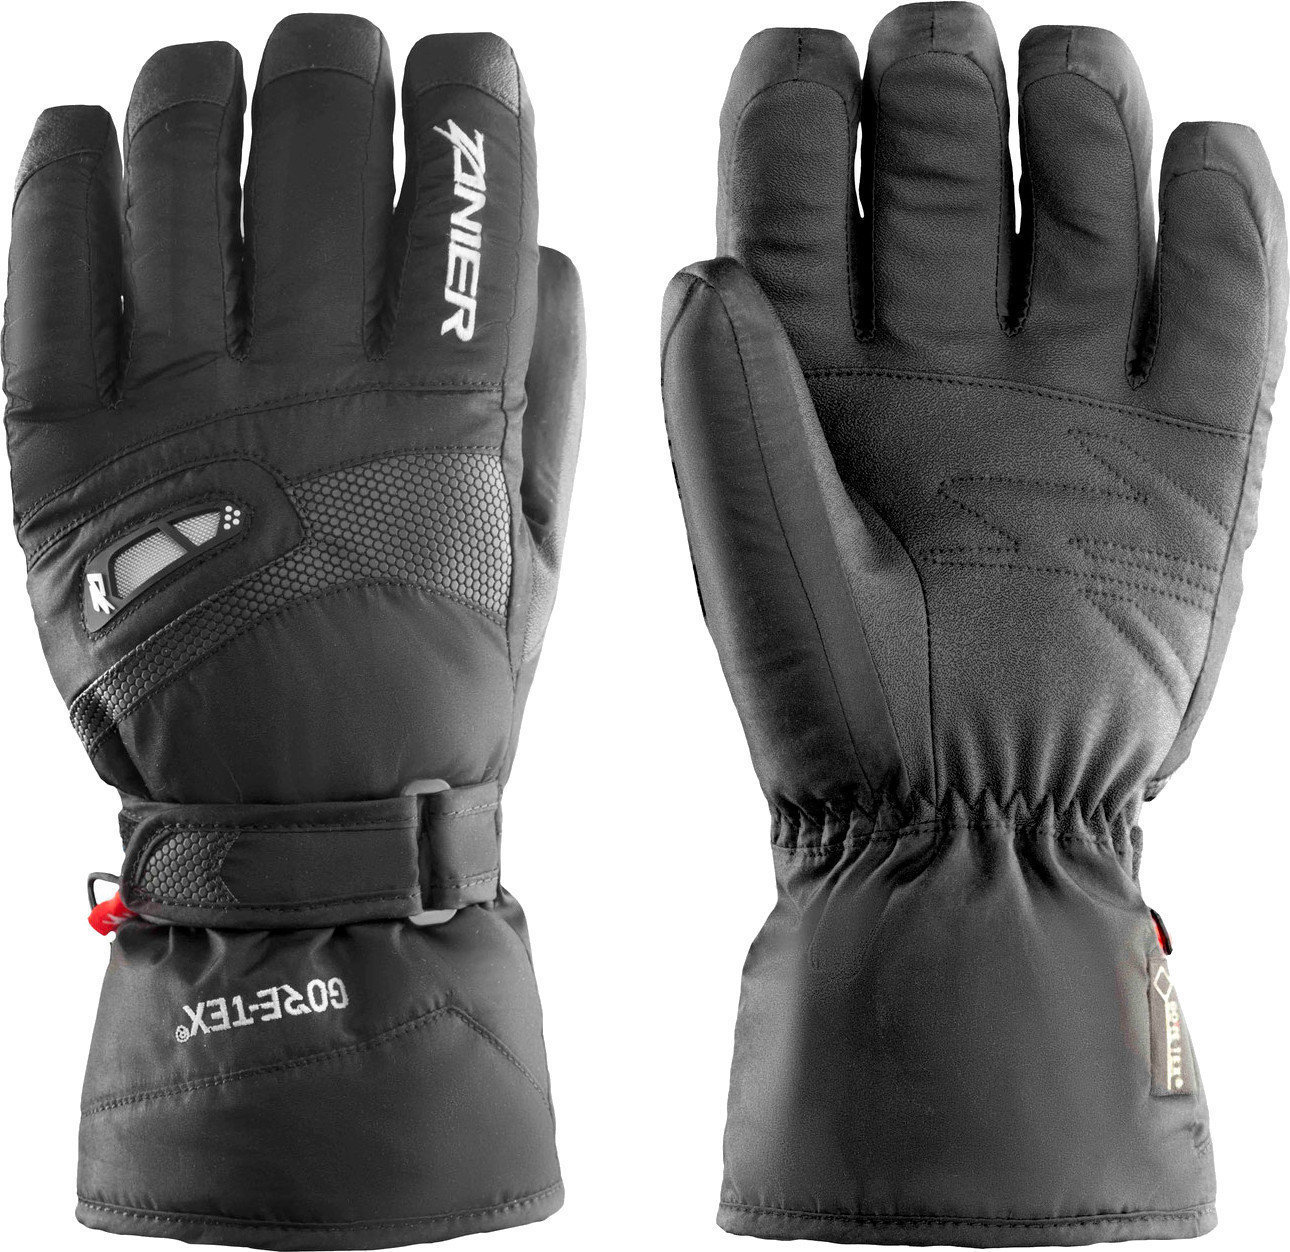 SkI Handschuhe Zanier Kitzbuhel.GTX Black L